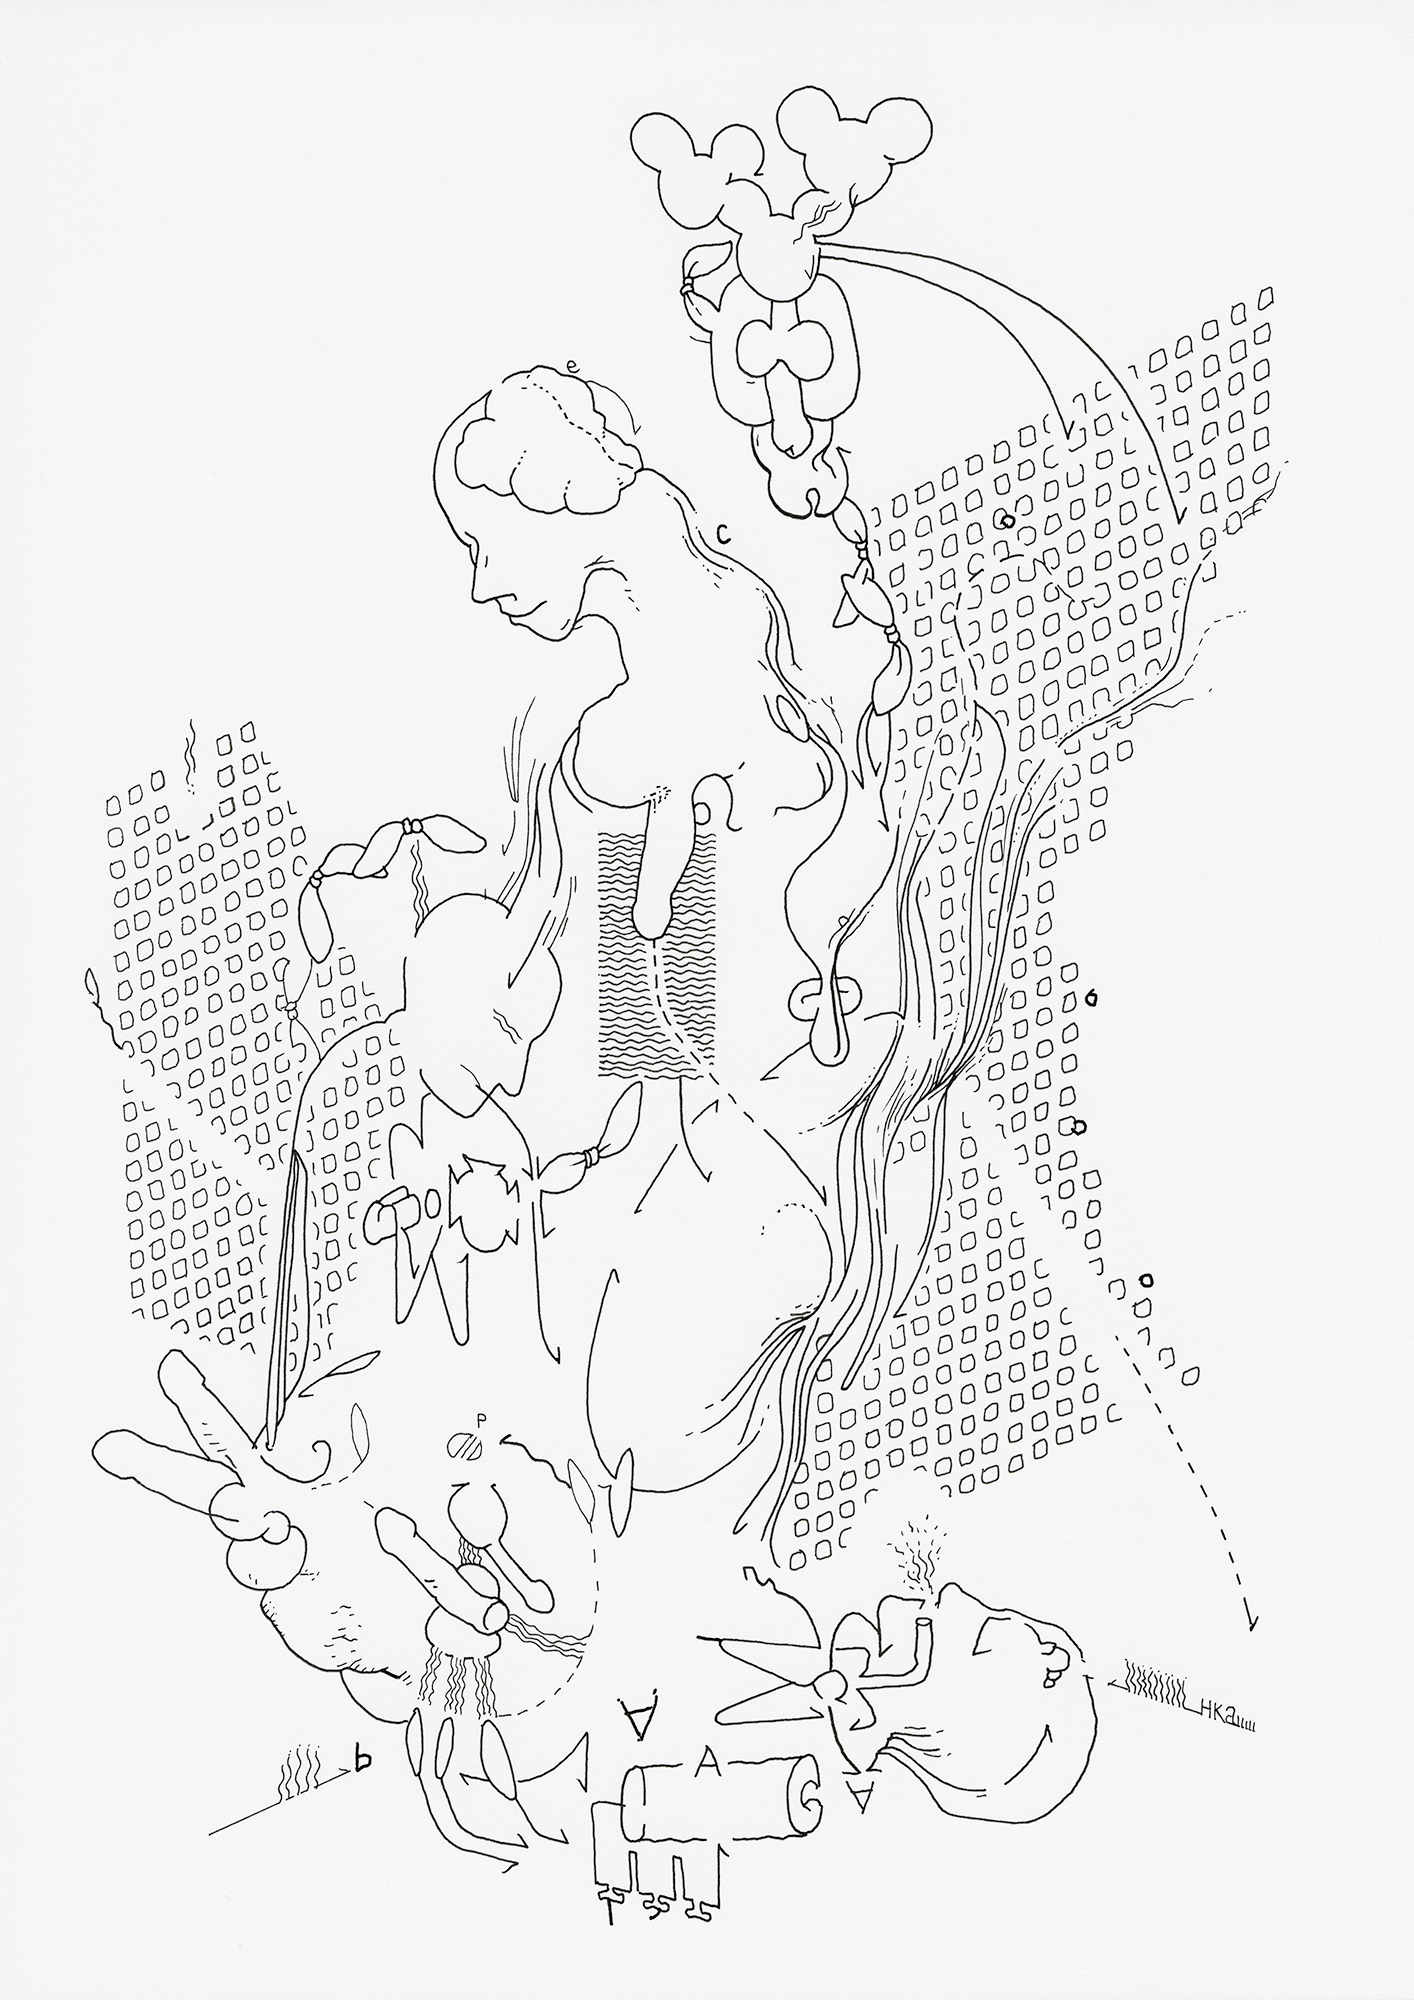 Hannes Kater: Tageszeichnung (Zeichnung/drawing) vom 23.12.2021 (1414 x 2000 Pixel)